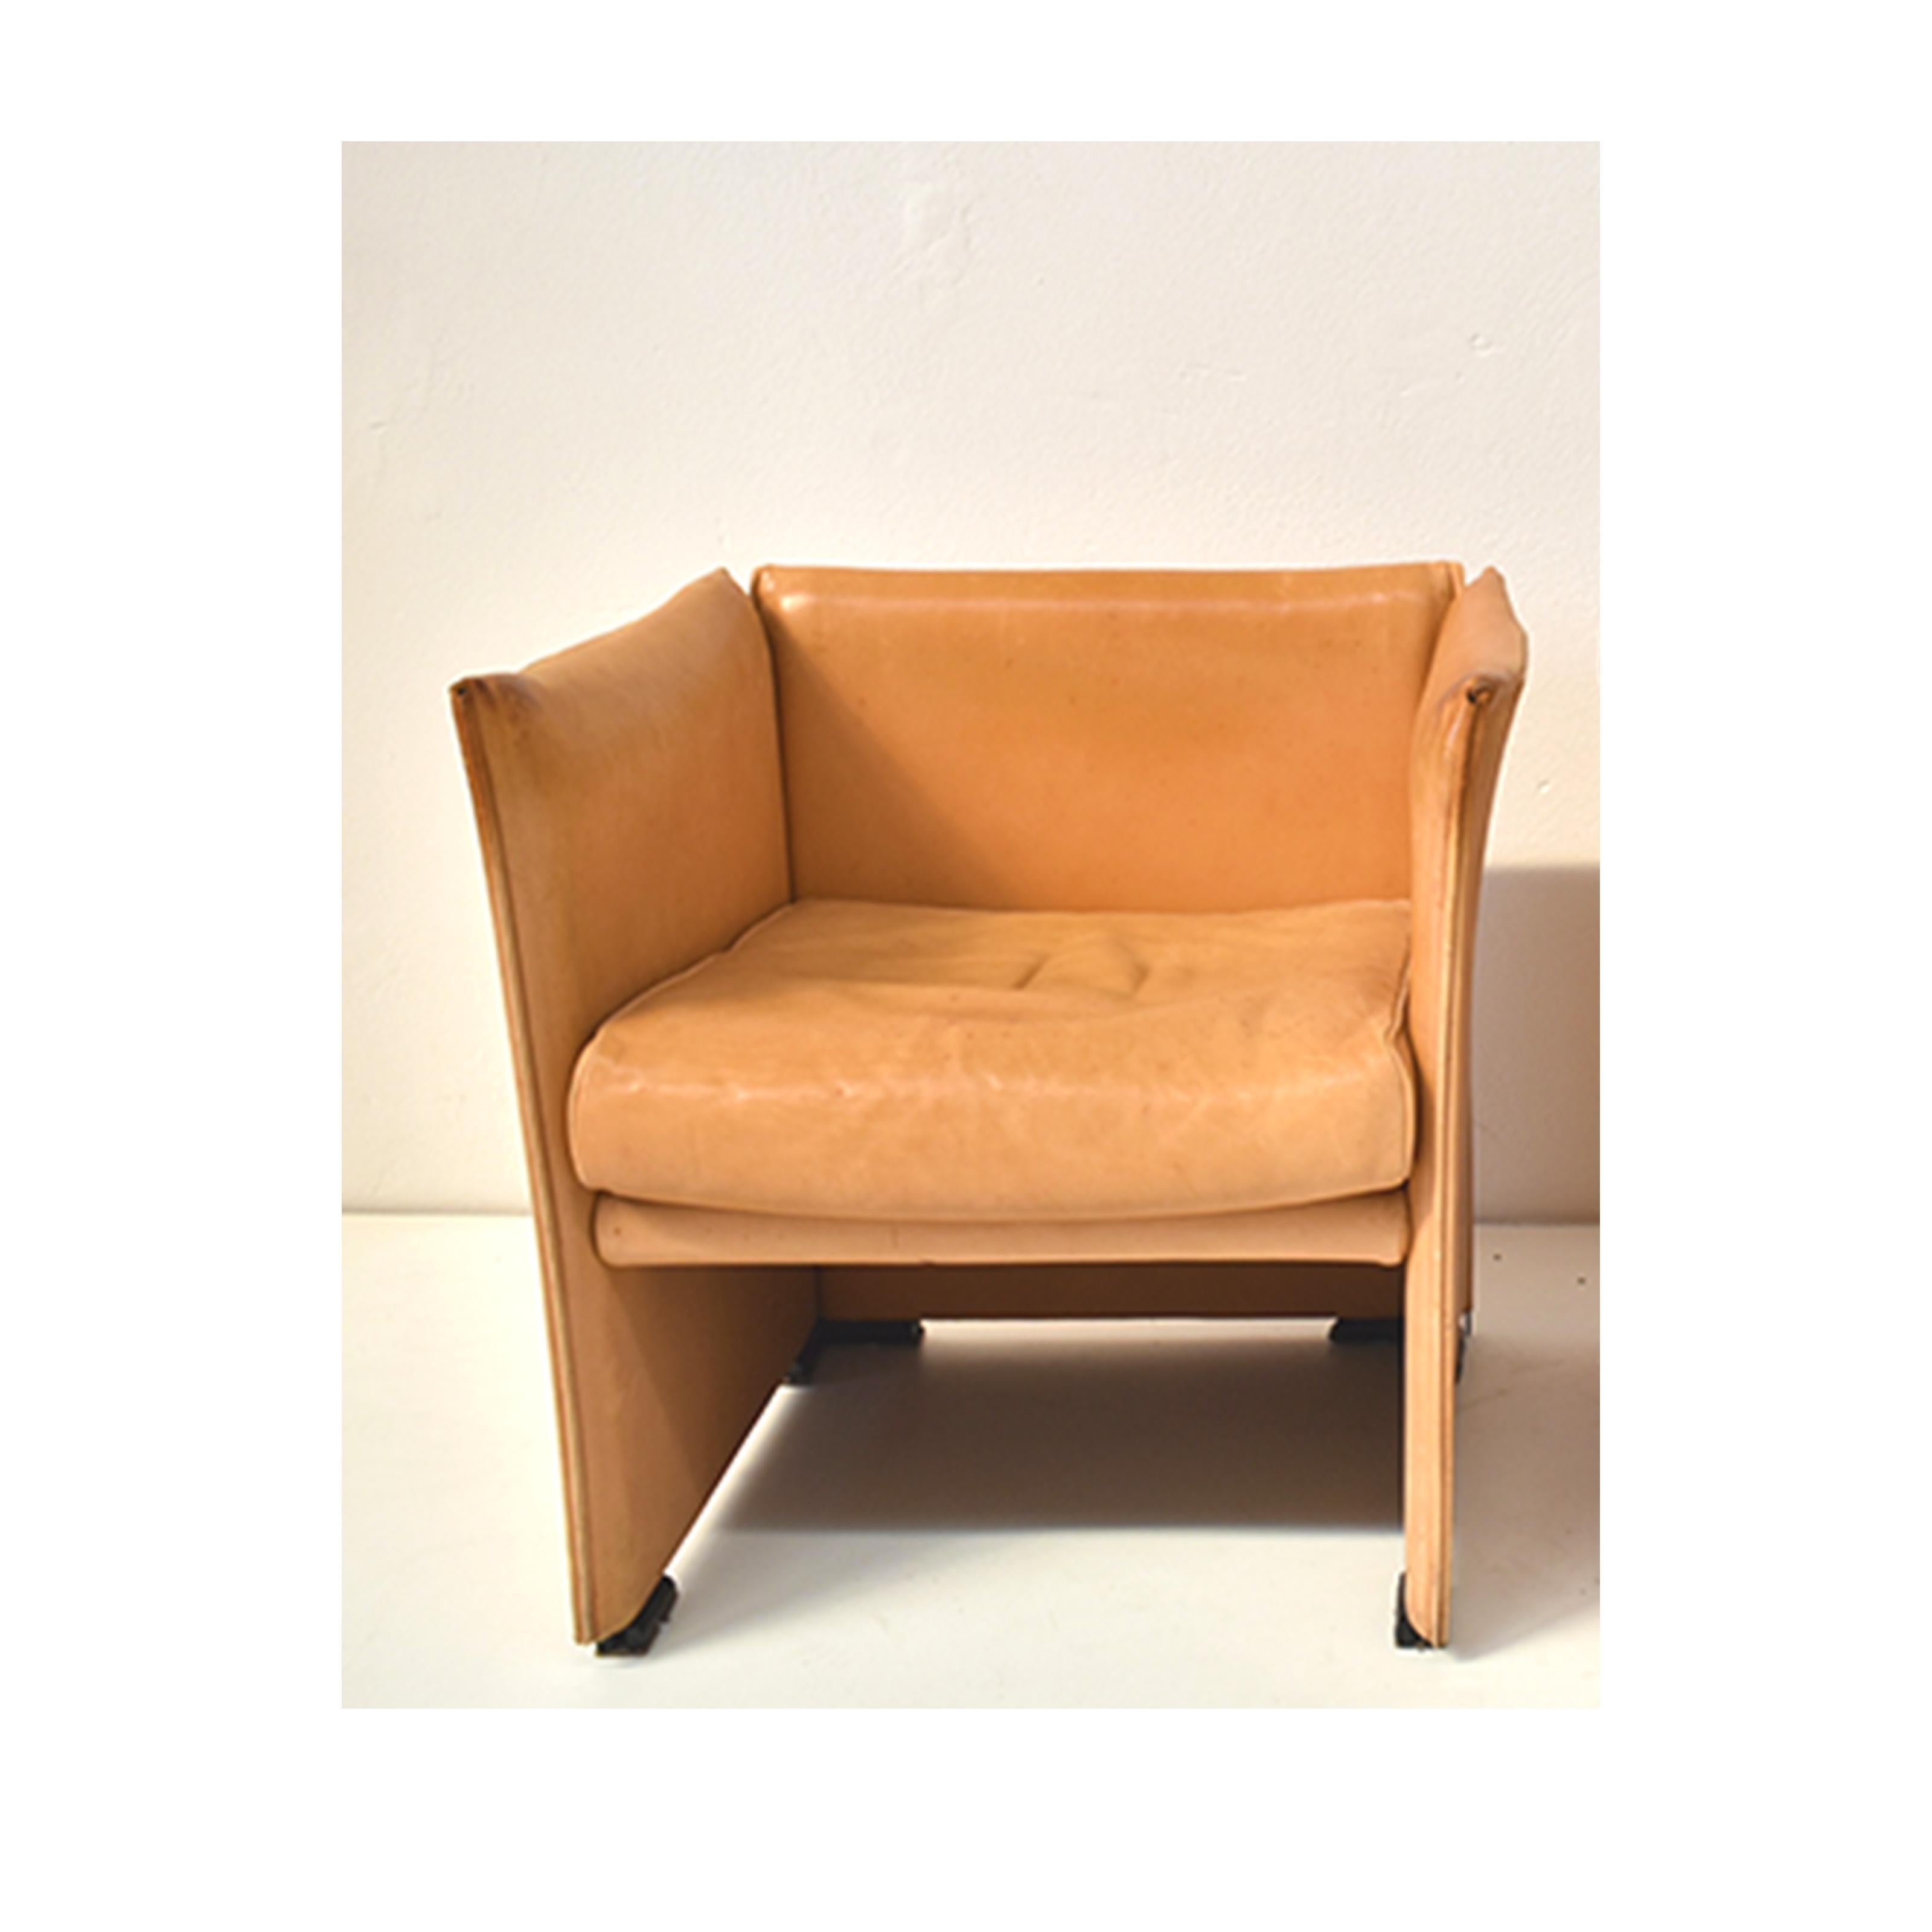 Vintage-Sessel aus den 1970er Jahren, italienische Herstellung, Design von Mario Bellini, Produktion von Cassina.
Der Sessel hat eine orangefarbene Lederpolsterung
Vintage Design in gutem Zustand; aber das Leder hat verschiedene Anzeichen von Zeit